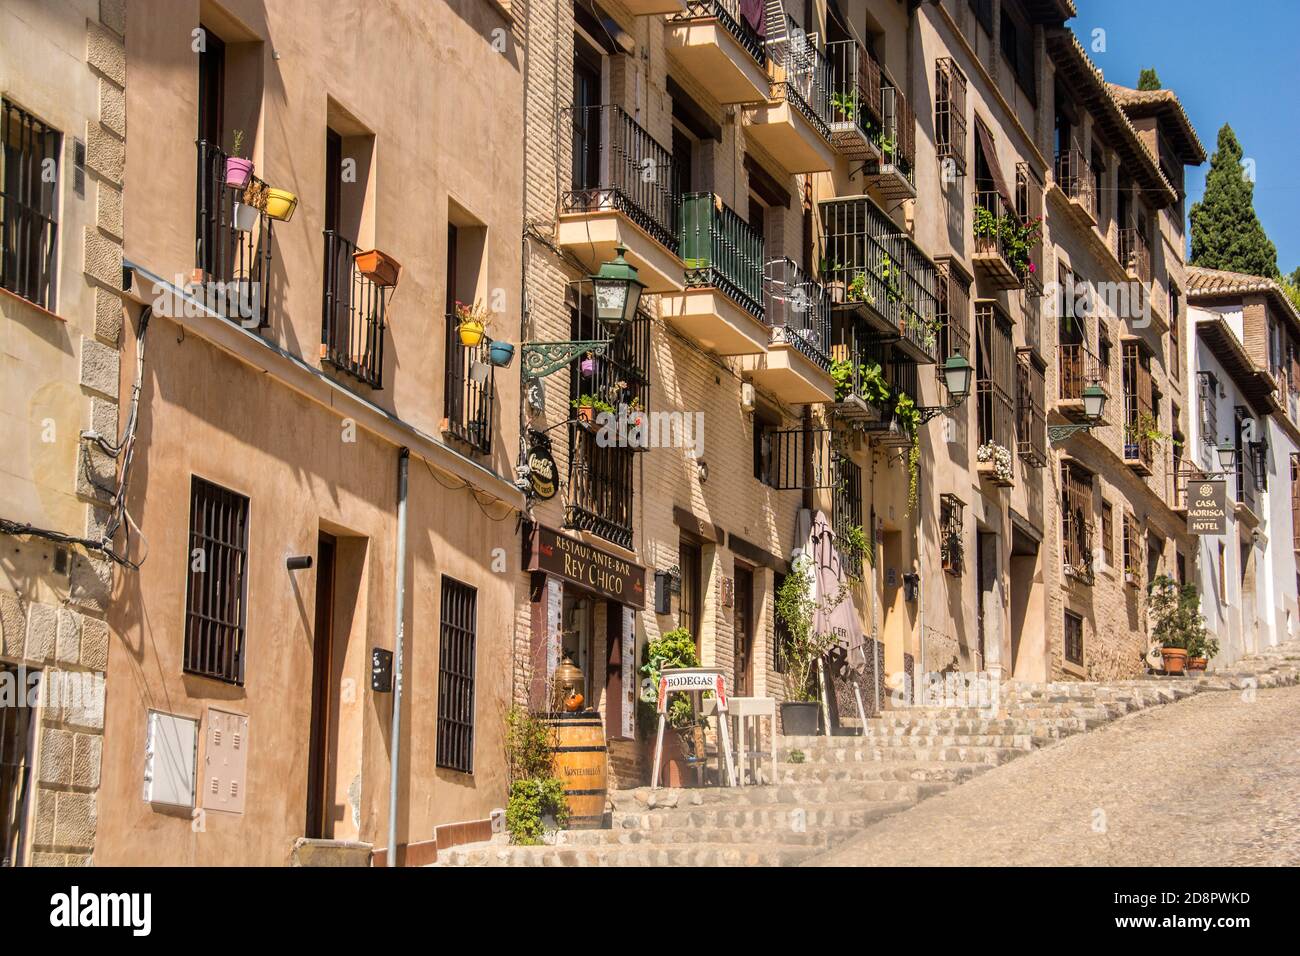 Eine Reihe von Wohnhäusern säumen eine Straße in Granada, Spanien. Stockfoto